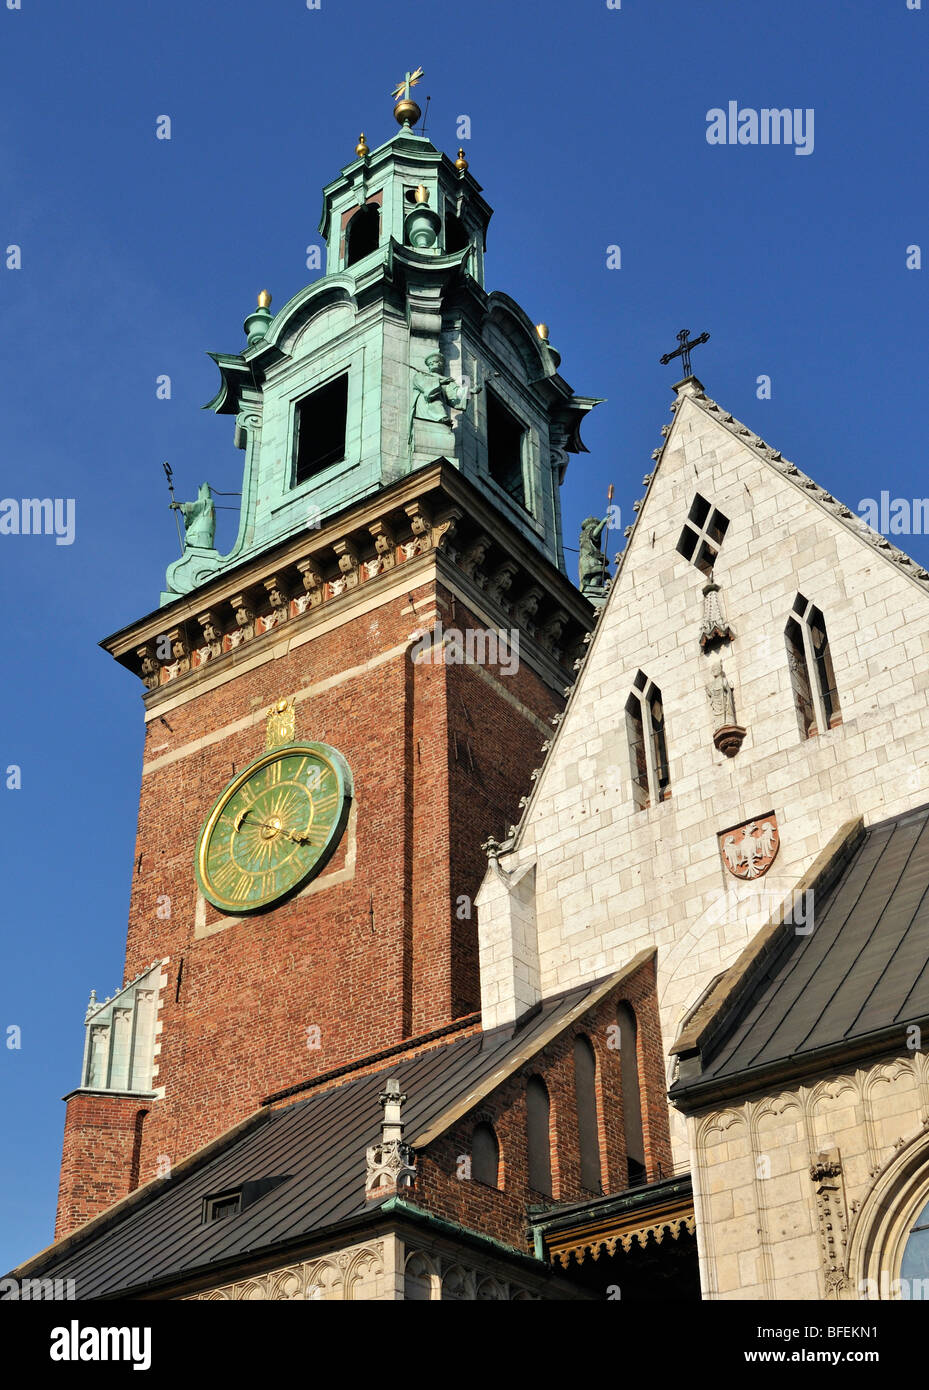 Detalle de la Catedral Basílica de los Ss. Stanisław y Vaclav sobre la colina de Wawel, en Cracovia, Polonia Foto de stock